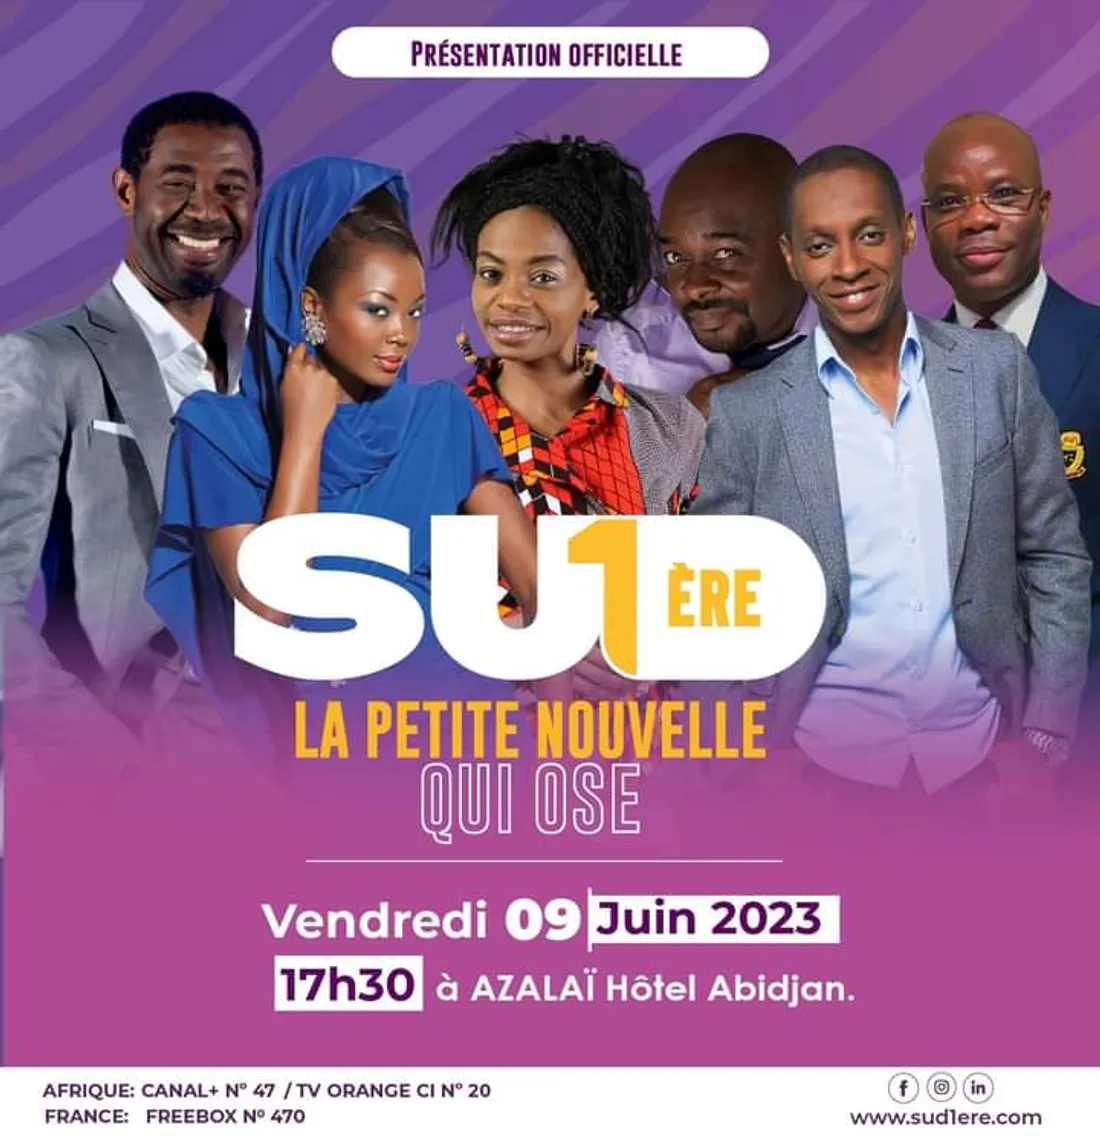 Média : Présentation officielle de la chaine de télé généraliste SUD1ère à Abidjan